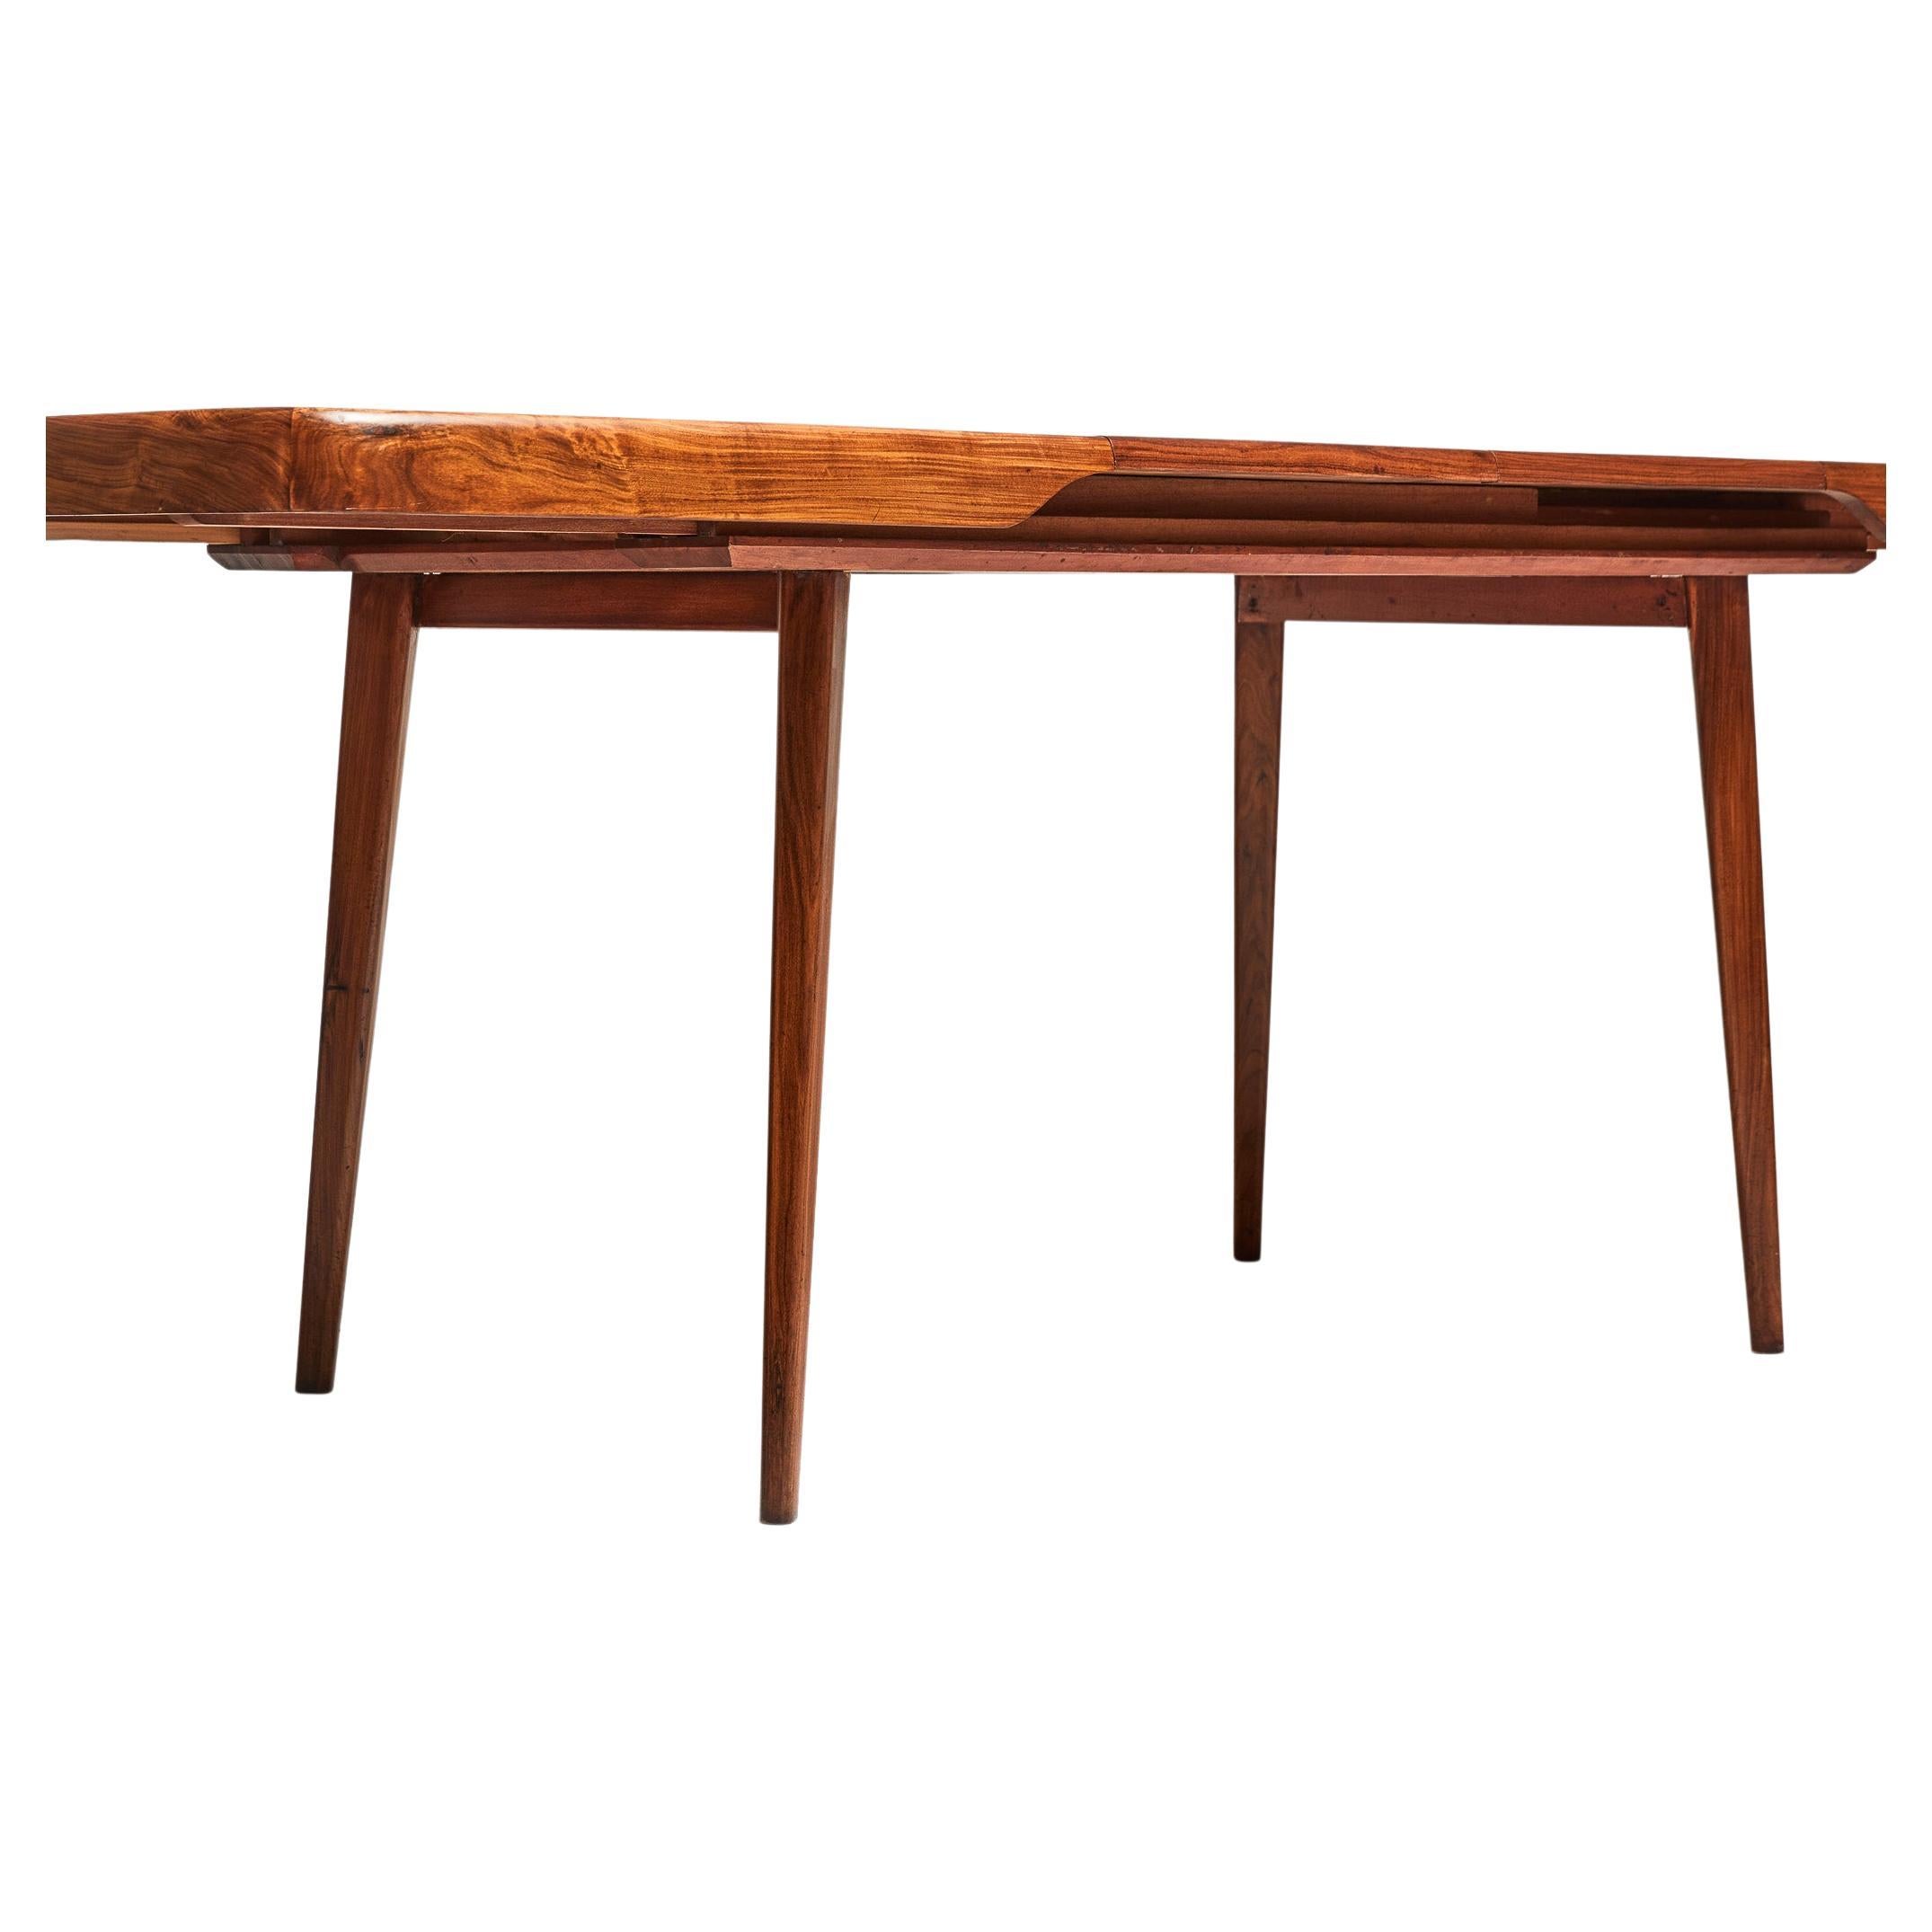 Disponible dès aujourd'hui, cette magnifique table à manger est fabriquée en bois dur massif Caviuna et dispose d'un plateau extensible. Il n'y a presque pas de vis ni de clous, mais uniquement des raccords en bois. Il s'agit d'une table à 6 places